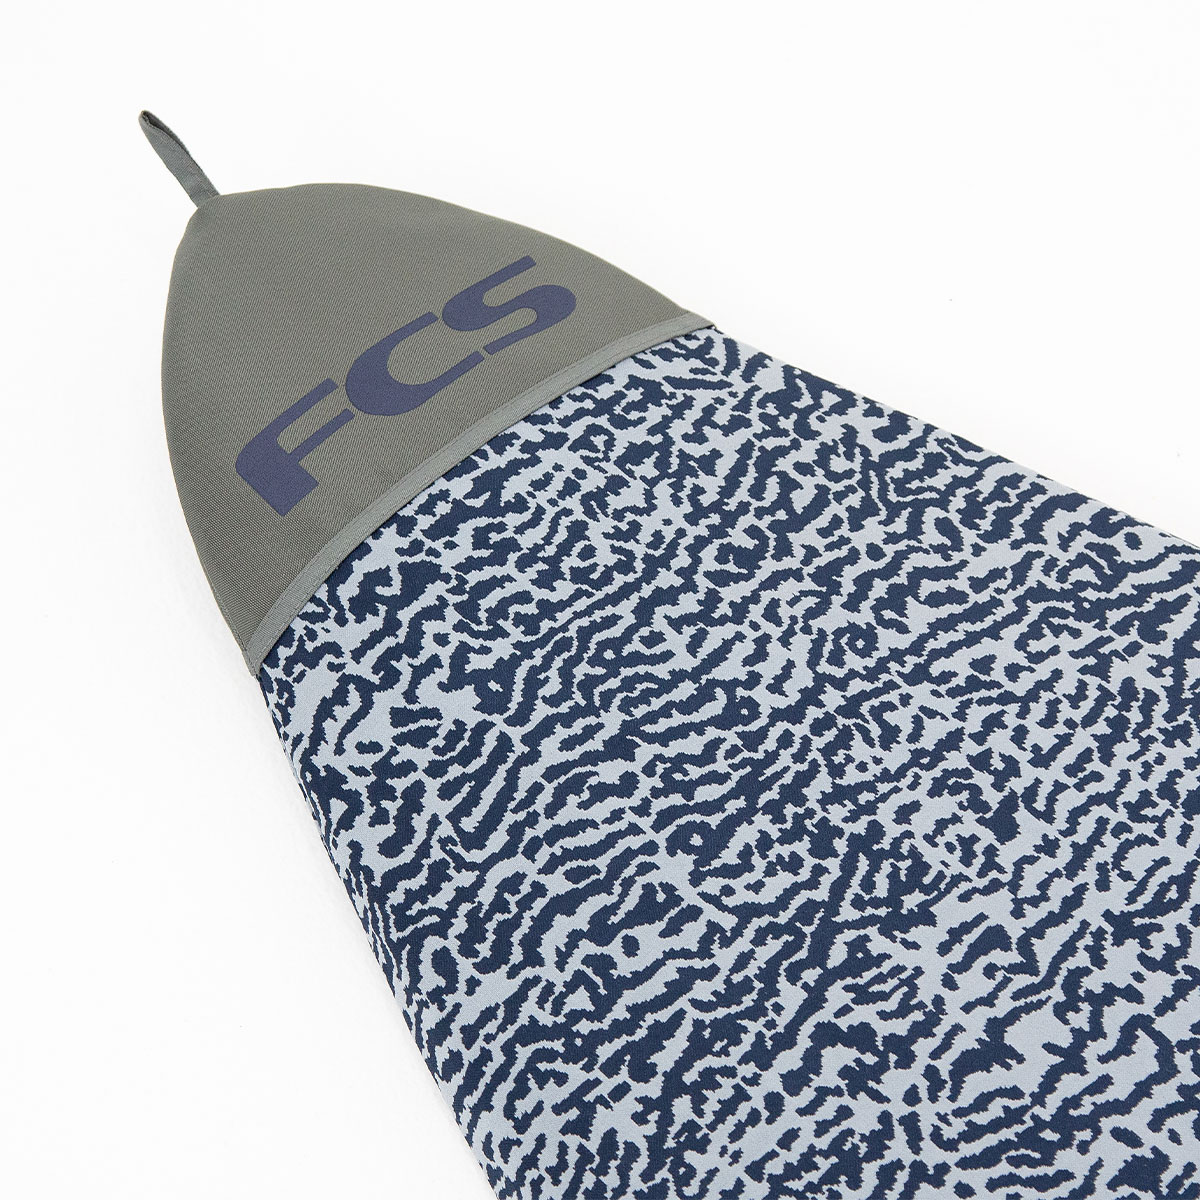 FCS Stretch Longboard Cover | 9'0 Carbon